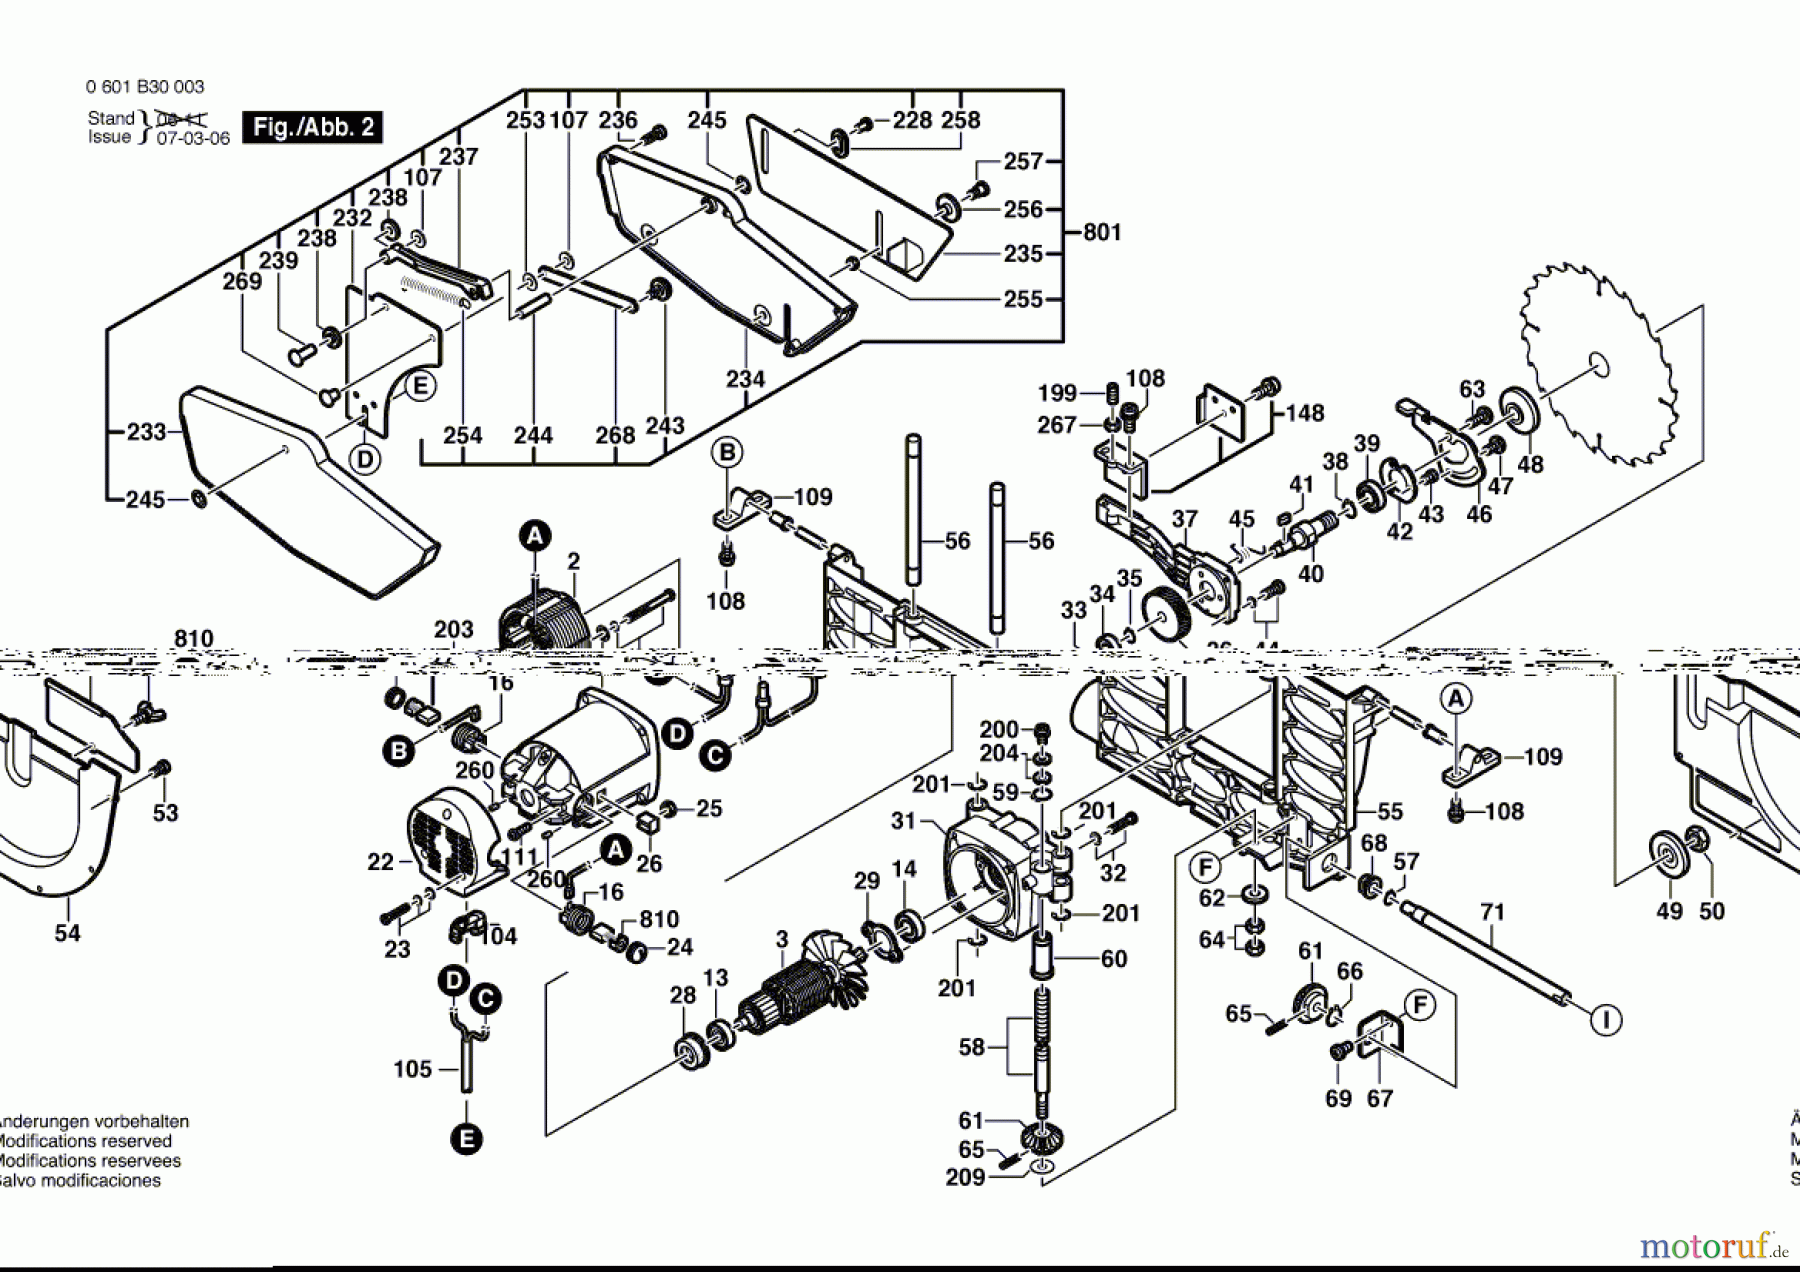  Bosch Werkzeug Tischkreissäge GTS 10 Seite 2